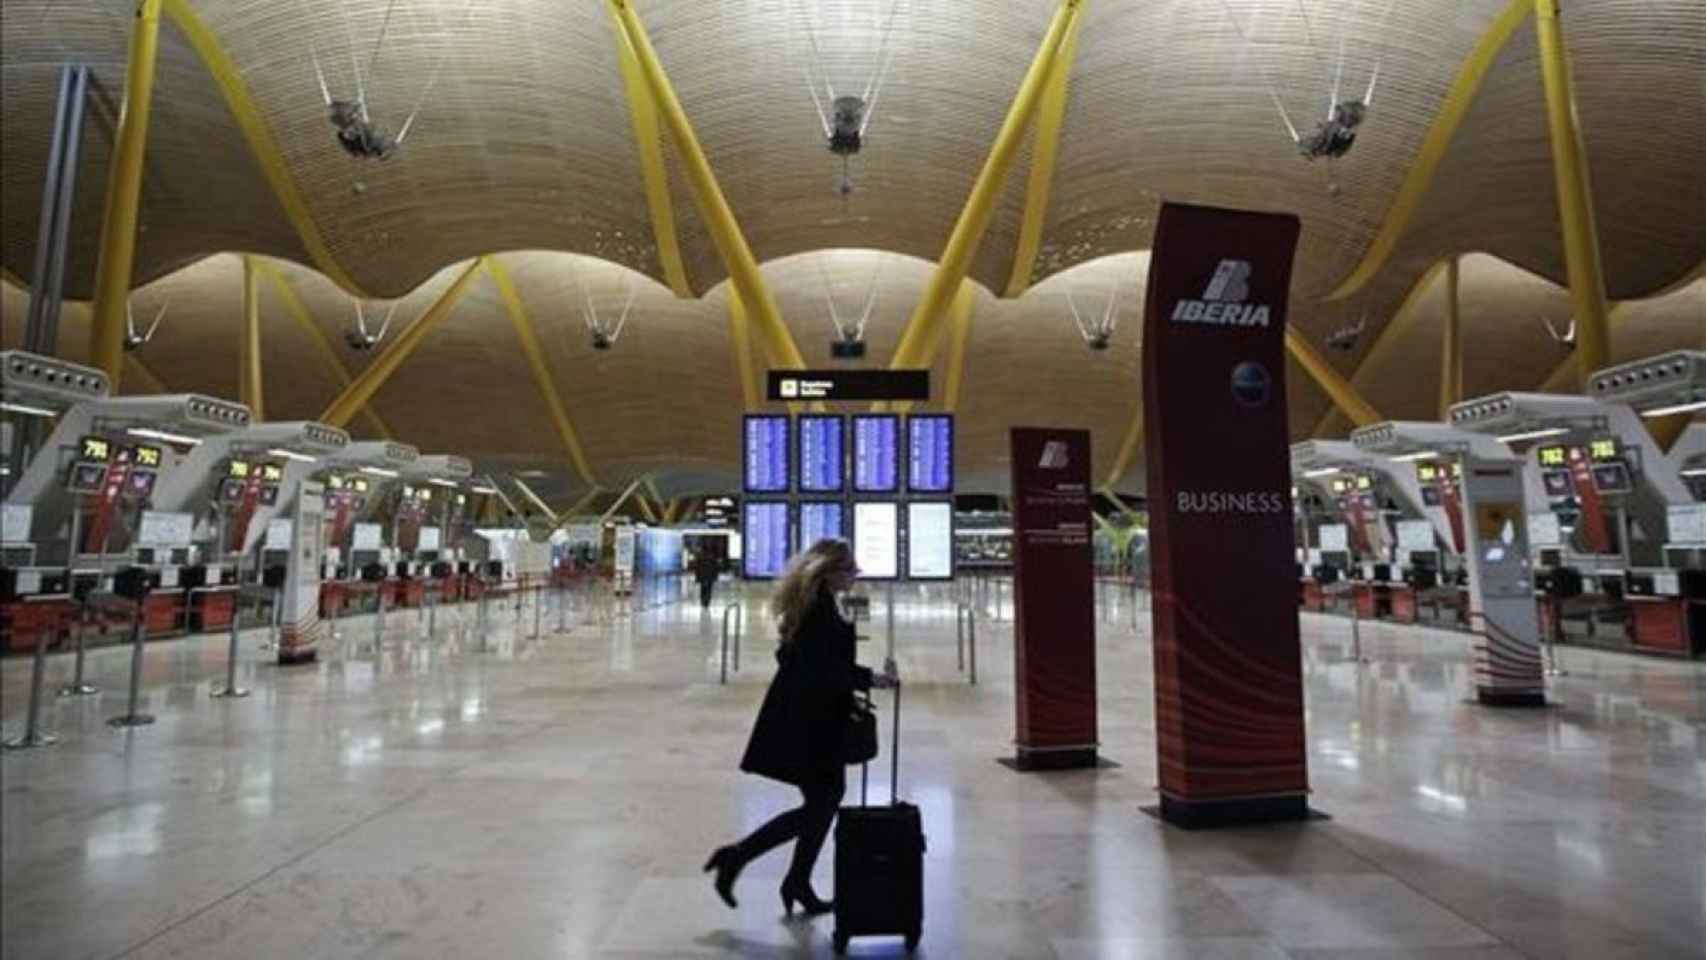 La CNMC aprueba congelar las tarifas aeroportuarias de Aena para 2019 y sube un 0,3% en bolsa